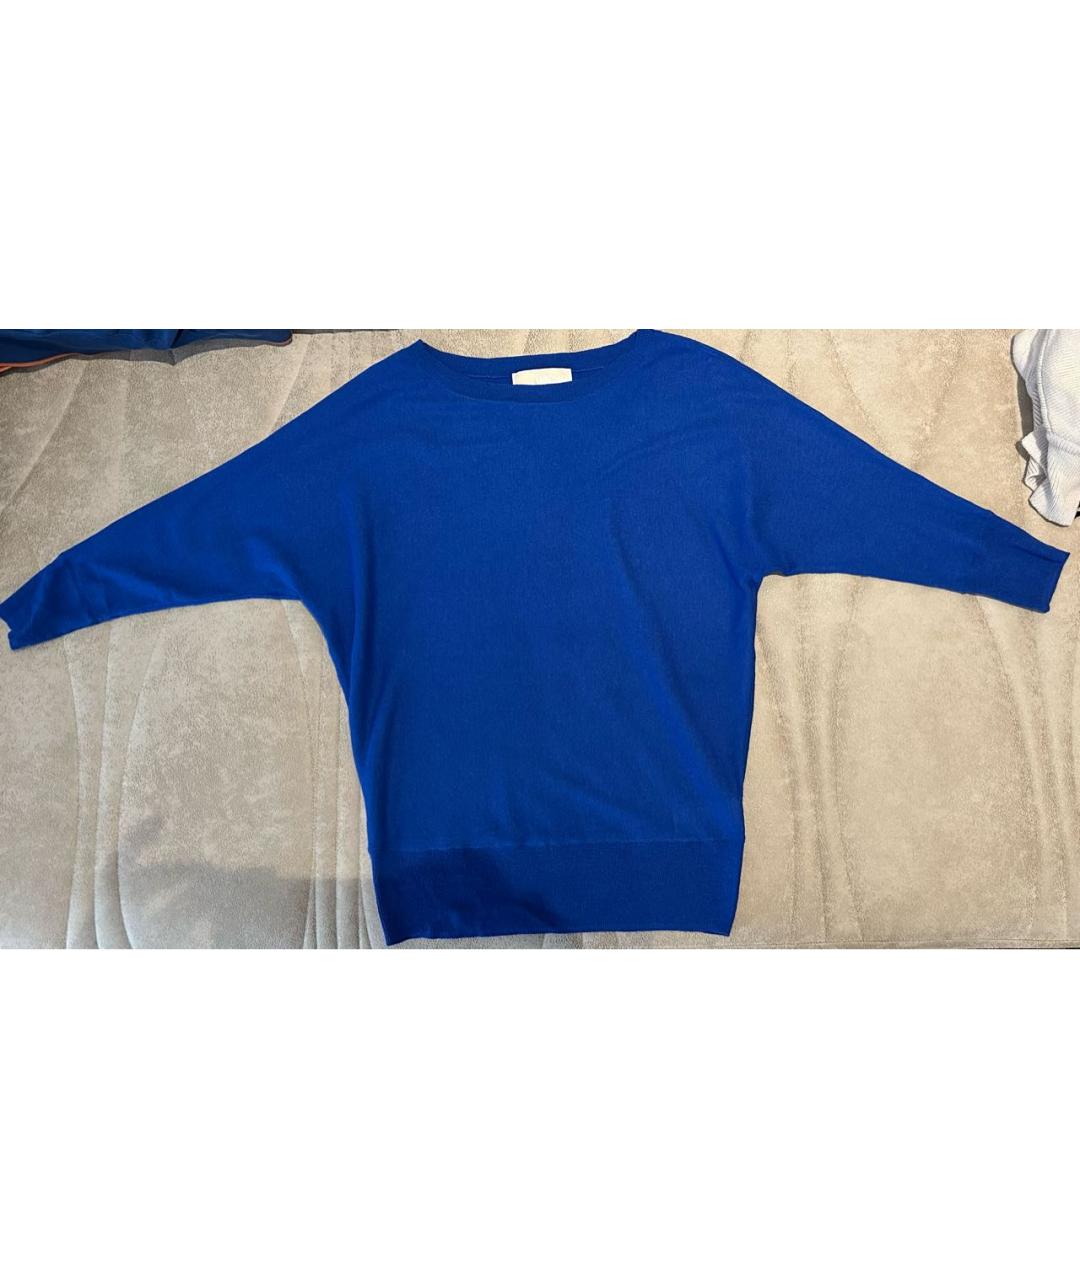 MICHAEL KORS Синий кашемировый джемпер / свитер, фото 4